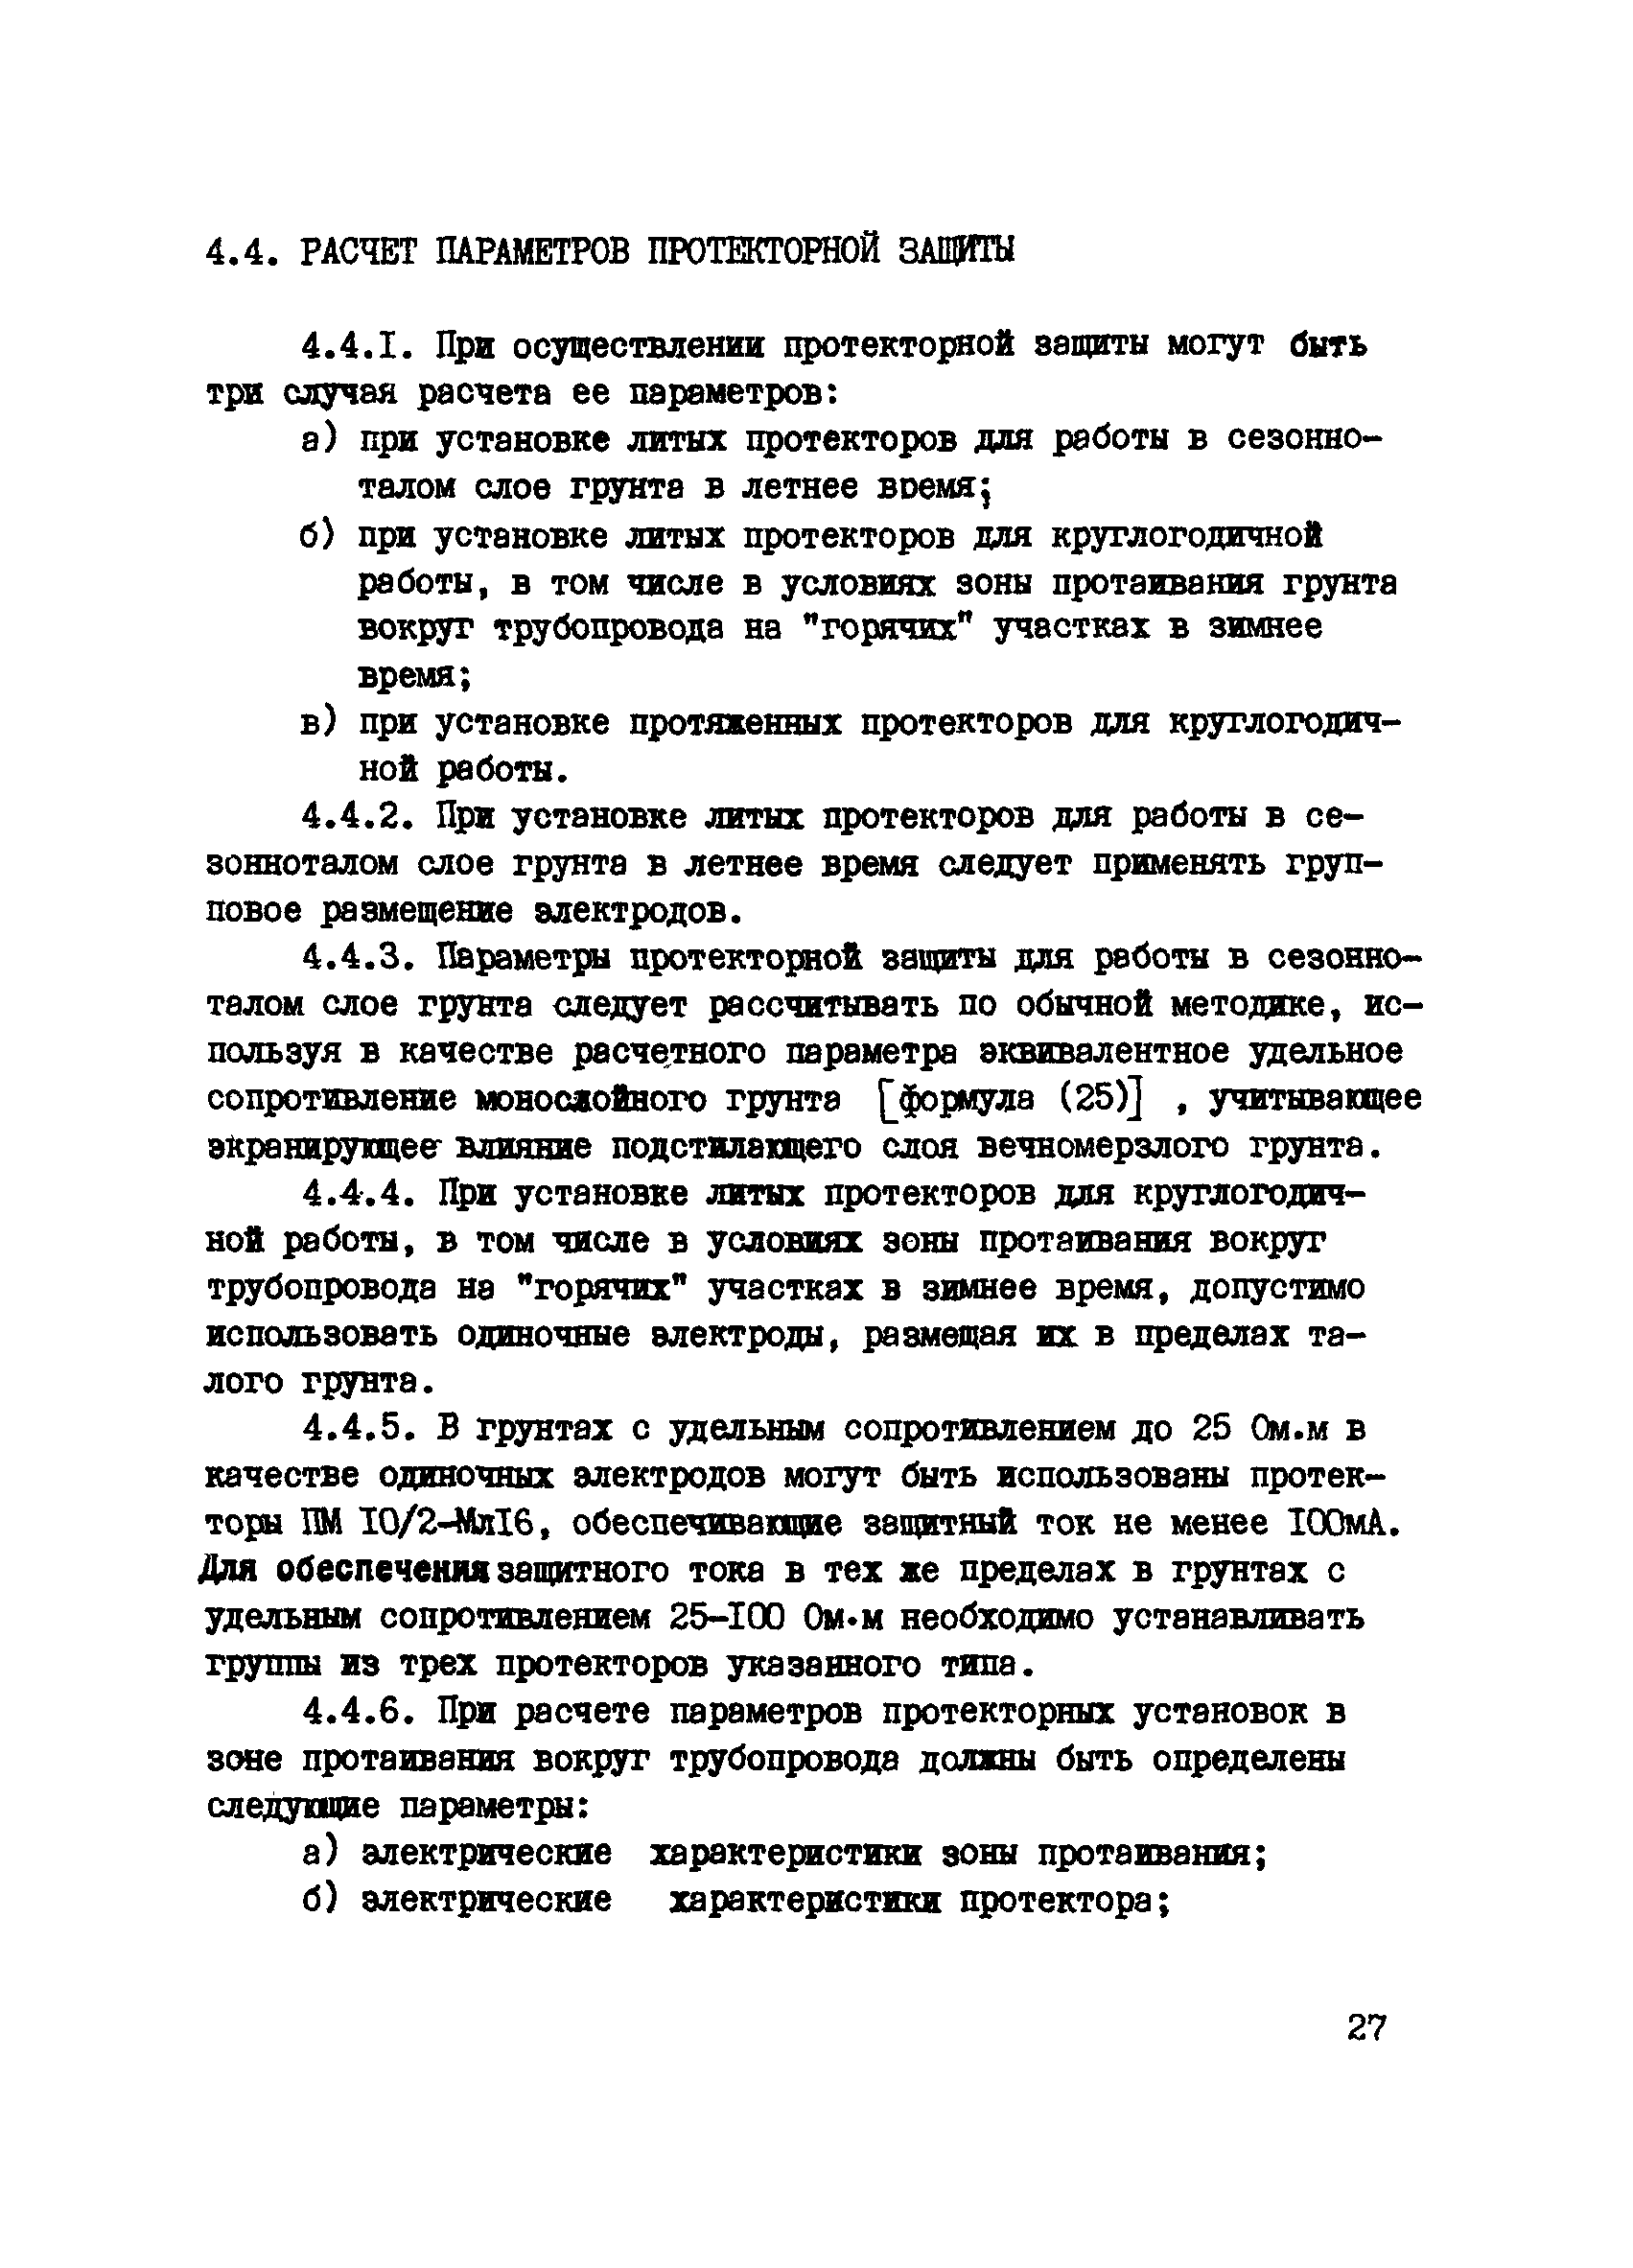 ВСН 2-71-76